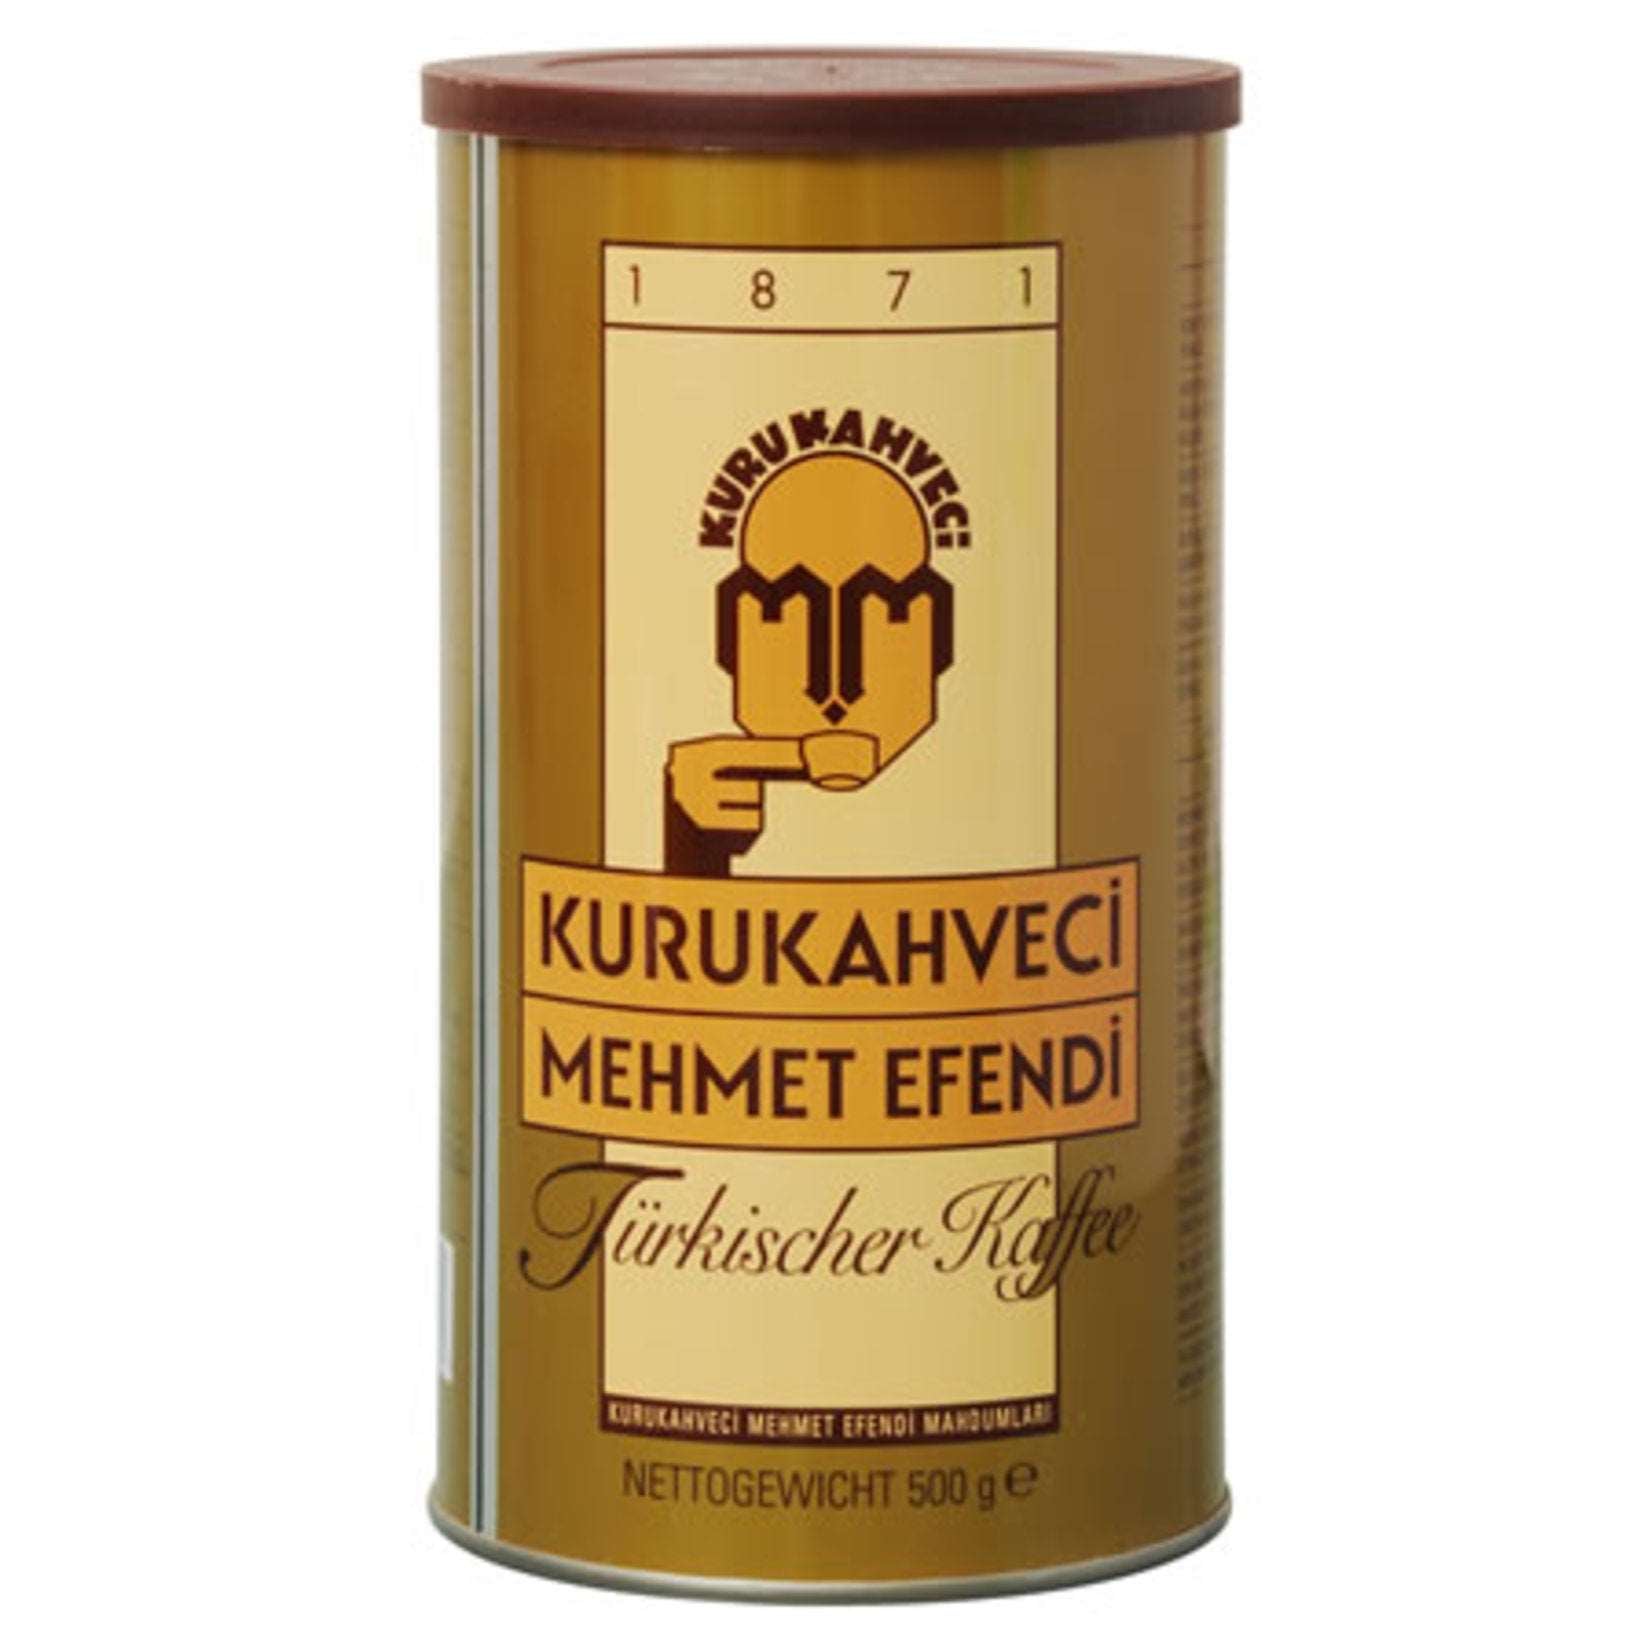 Kurukahveci Mehmet Efendi Turkish Coffee 500 Gm SF Traders